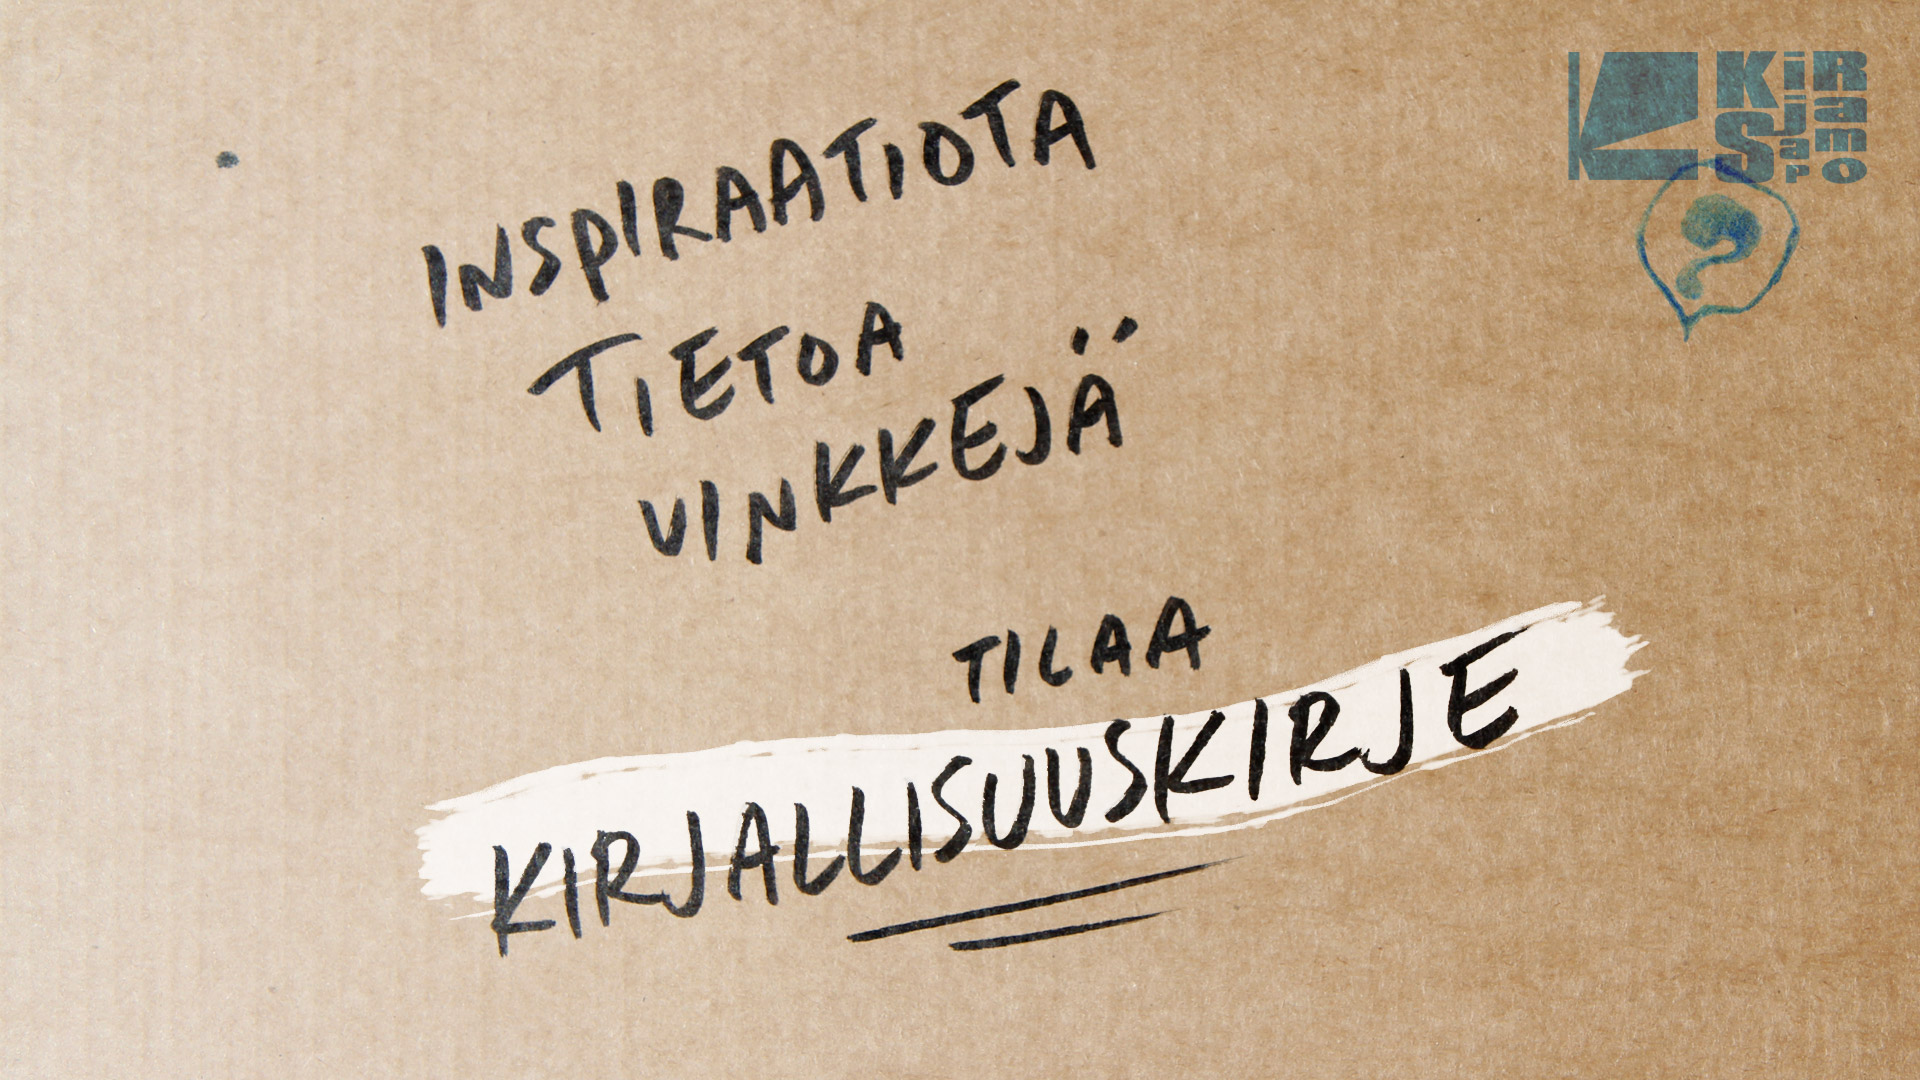 Tilaa Kirjallisuuskirje -banner.